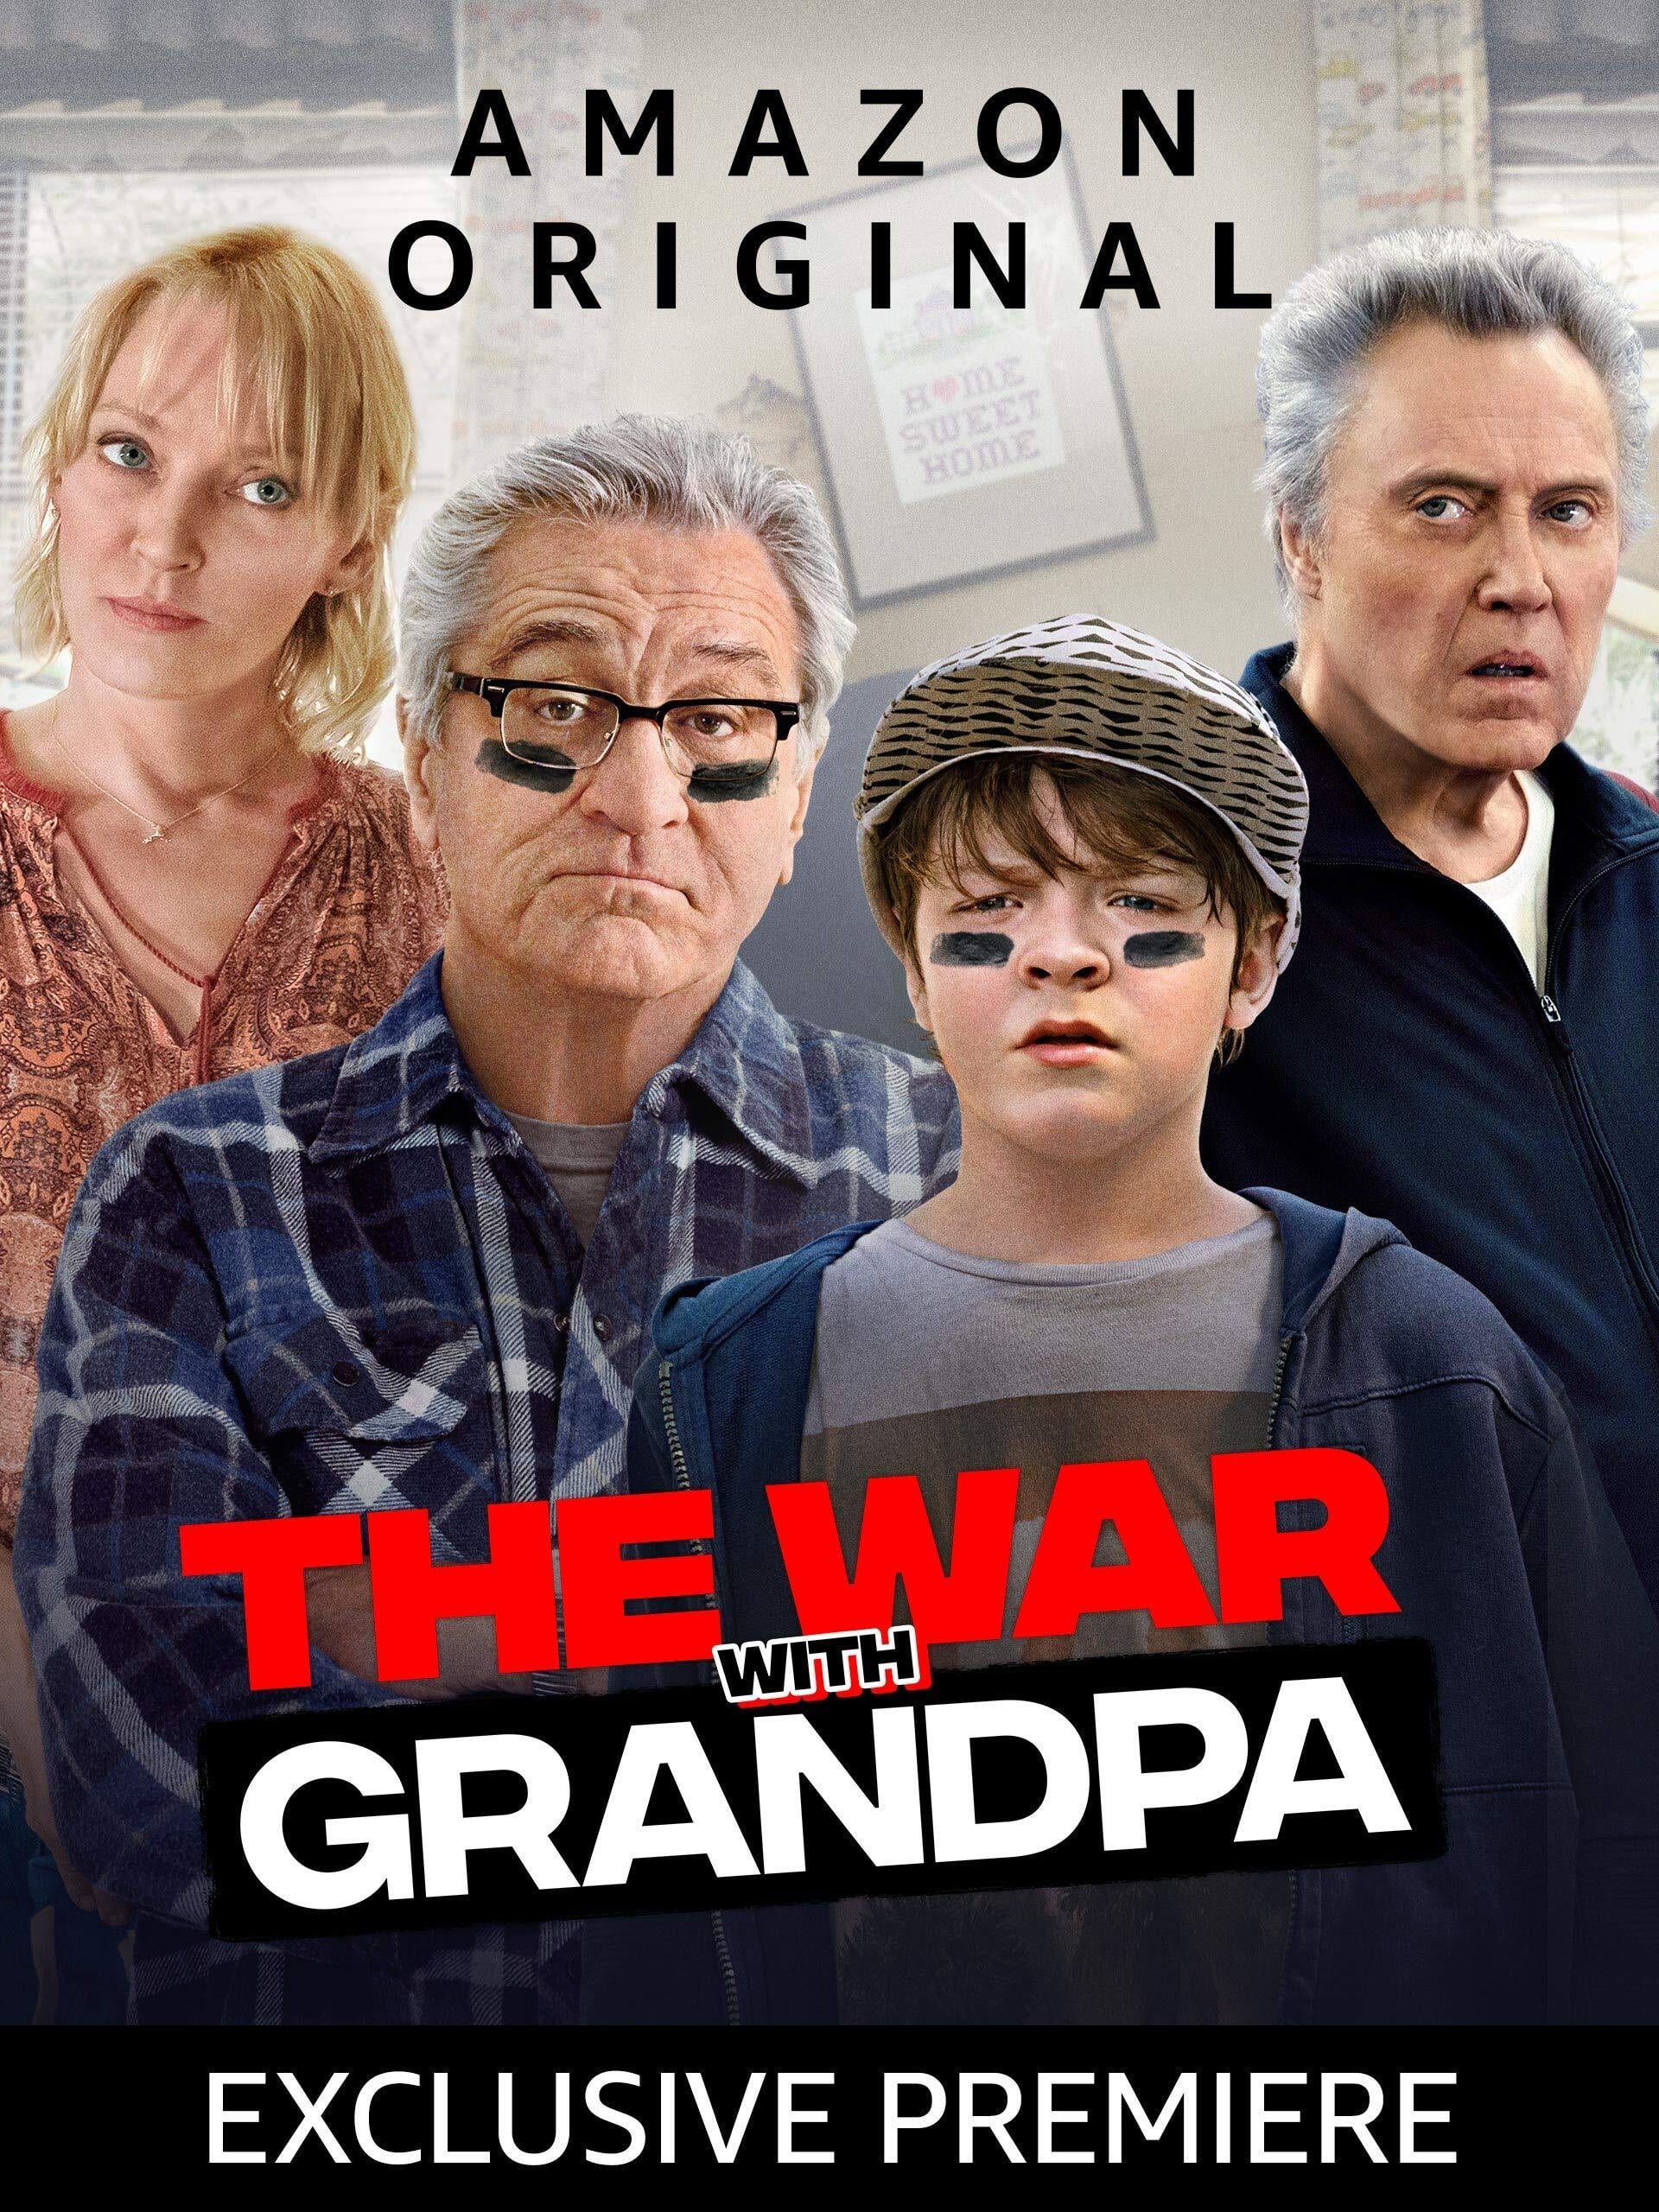 ดูหนังออนไลน์ฟรี The War with Grandpa ถ้าปู่แน่ ก็มาดิครับ